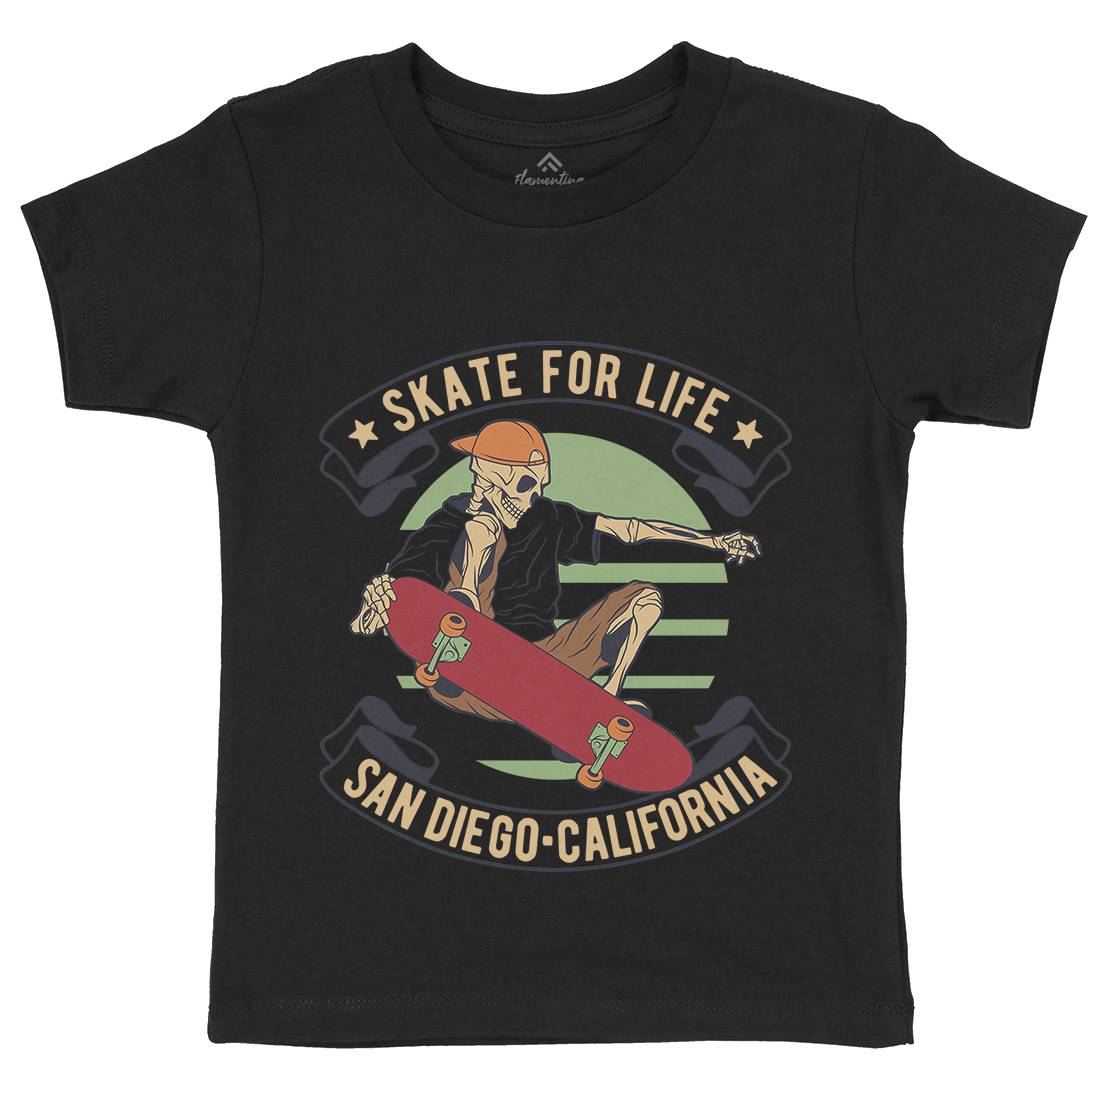 For Life Kids Organic Crew Neck T-Shirt Skate D970